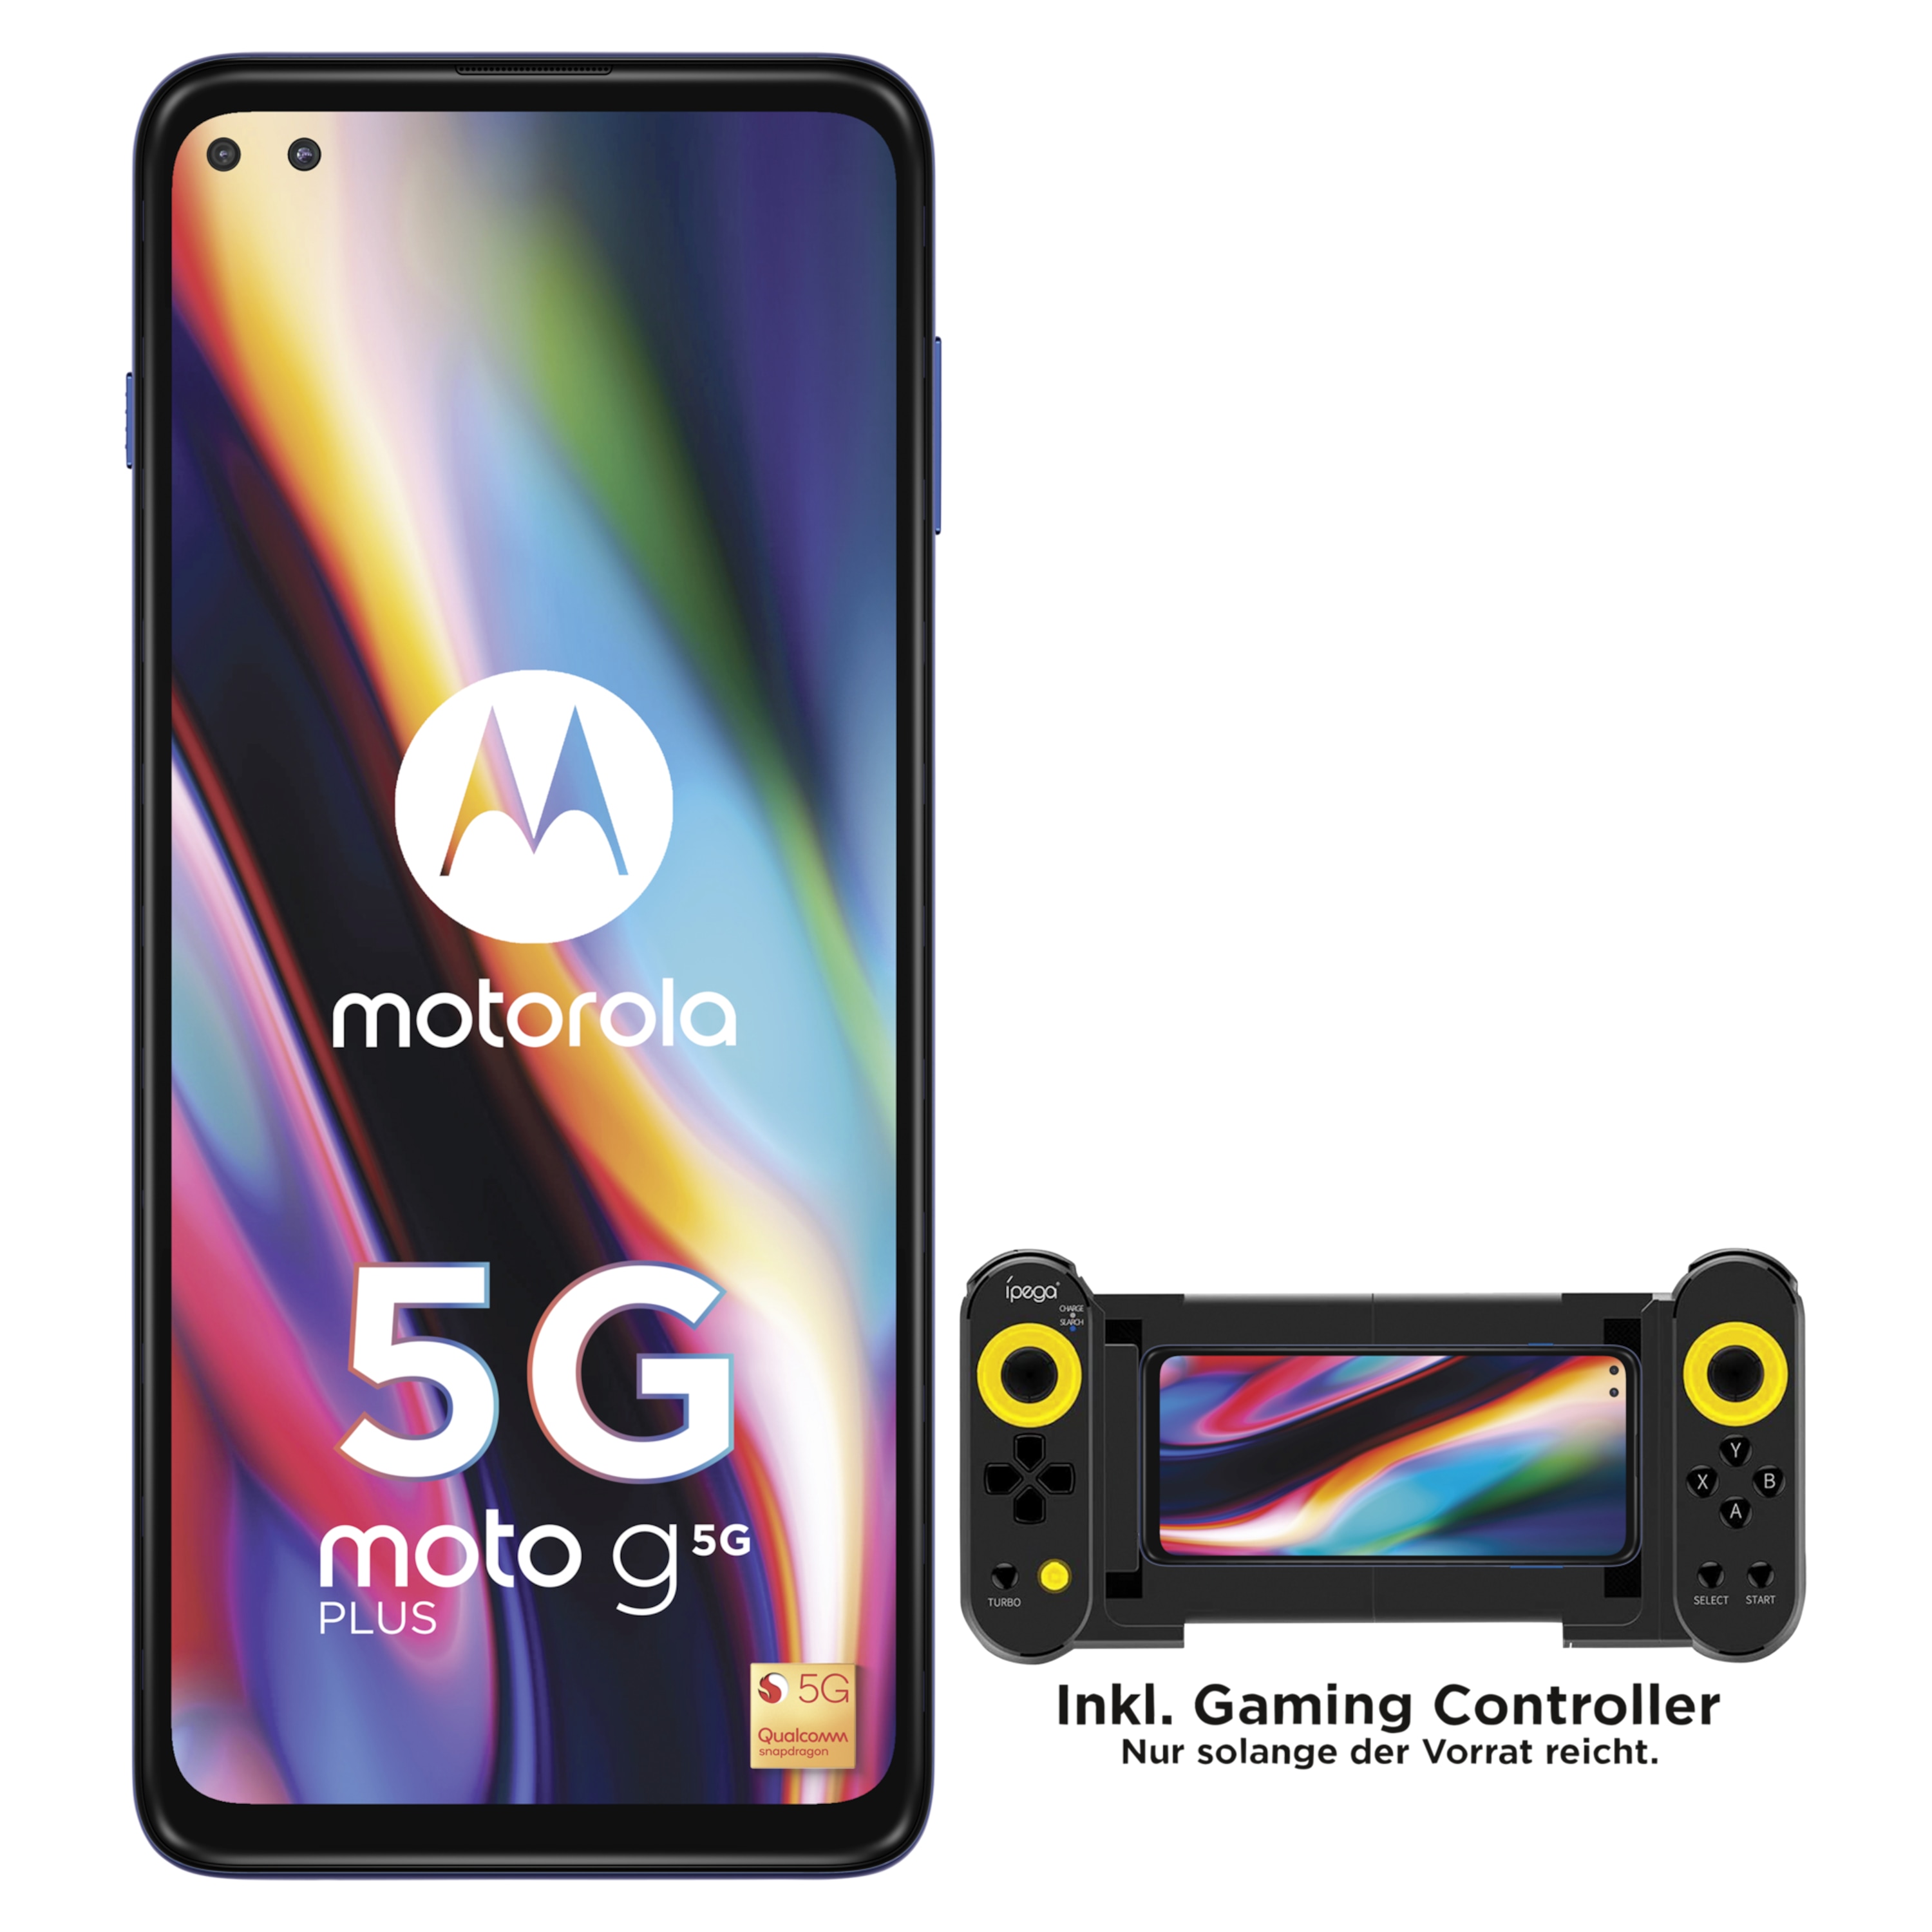 MOTOROLA moto g 5G plus Smartphone, 17 cm (6,7") FHD+ Display, Android™ 10, 64 GB Speicher, 4 GB Arbeitsspeicher, Octa-Core-Prozessor, Bluetooth® 5.0, 5G LTE + G Controller - ARTIKELSET